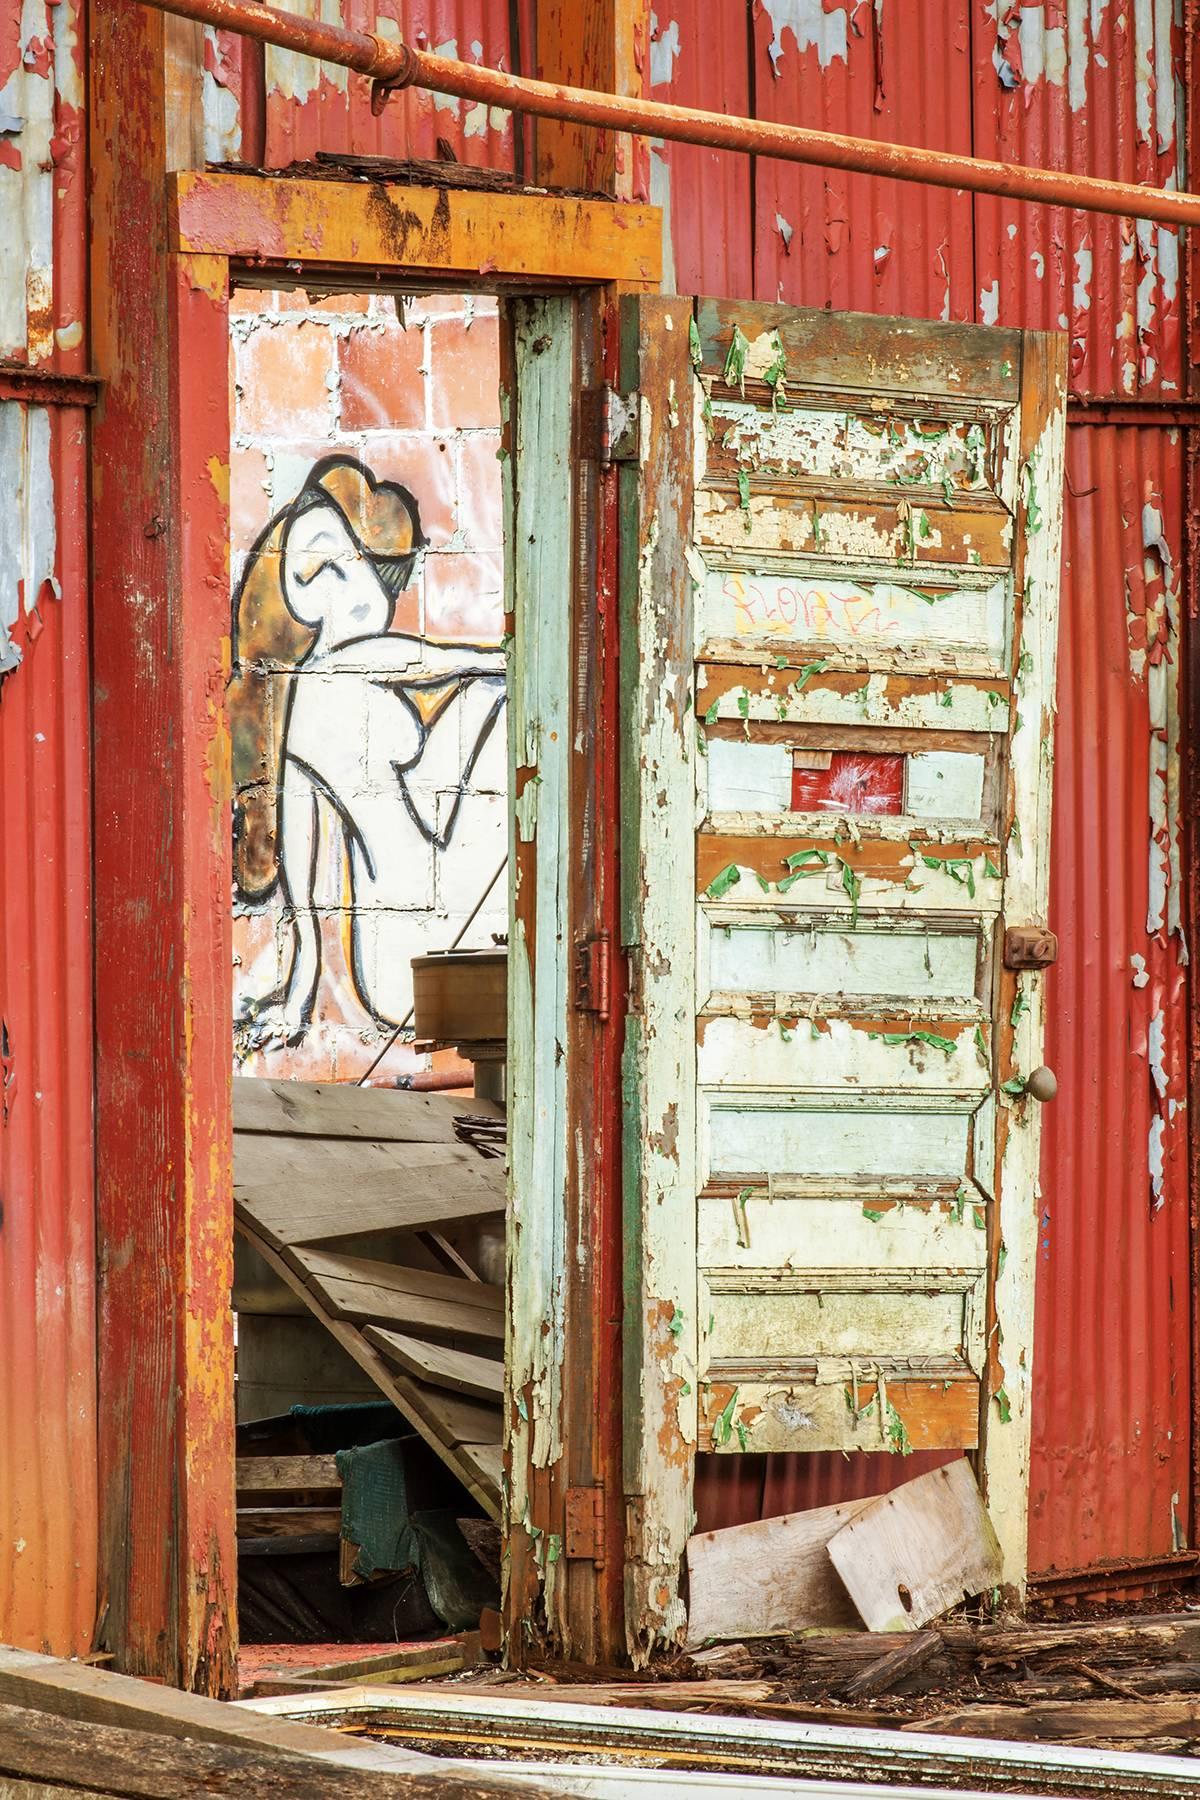 Color Photograph Rebecca Skinner - "Peep Show", contemporain, graffiti, femme, rouge, impression métallique, photo couleur.